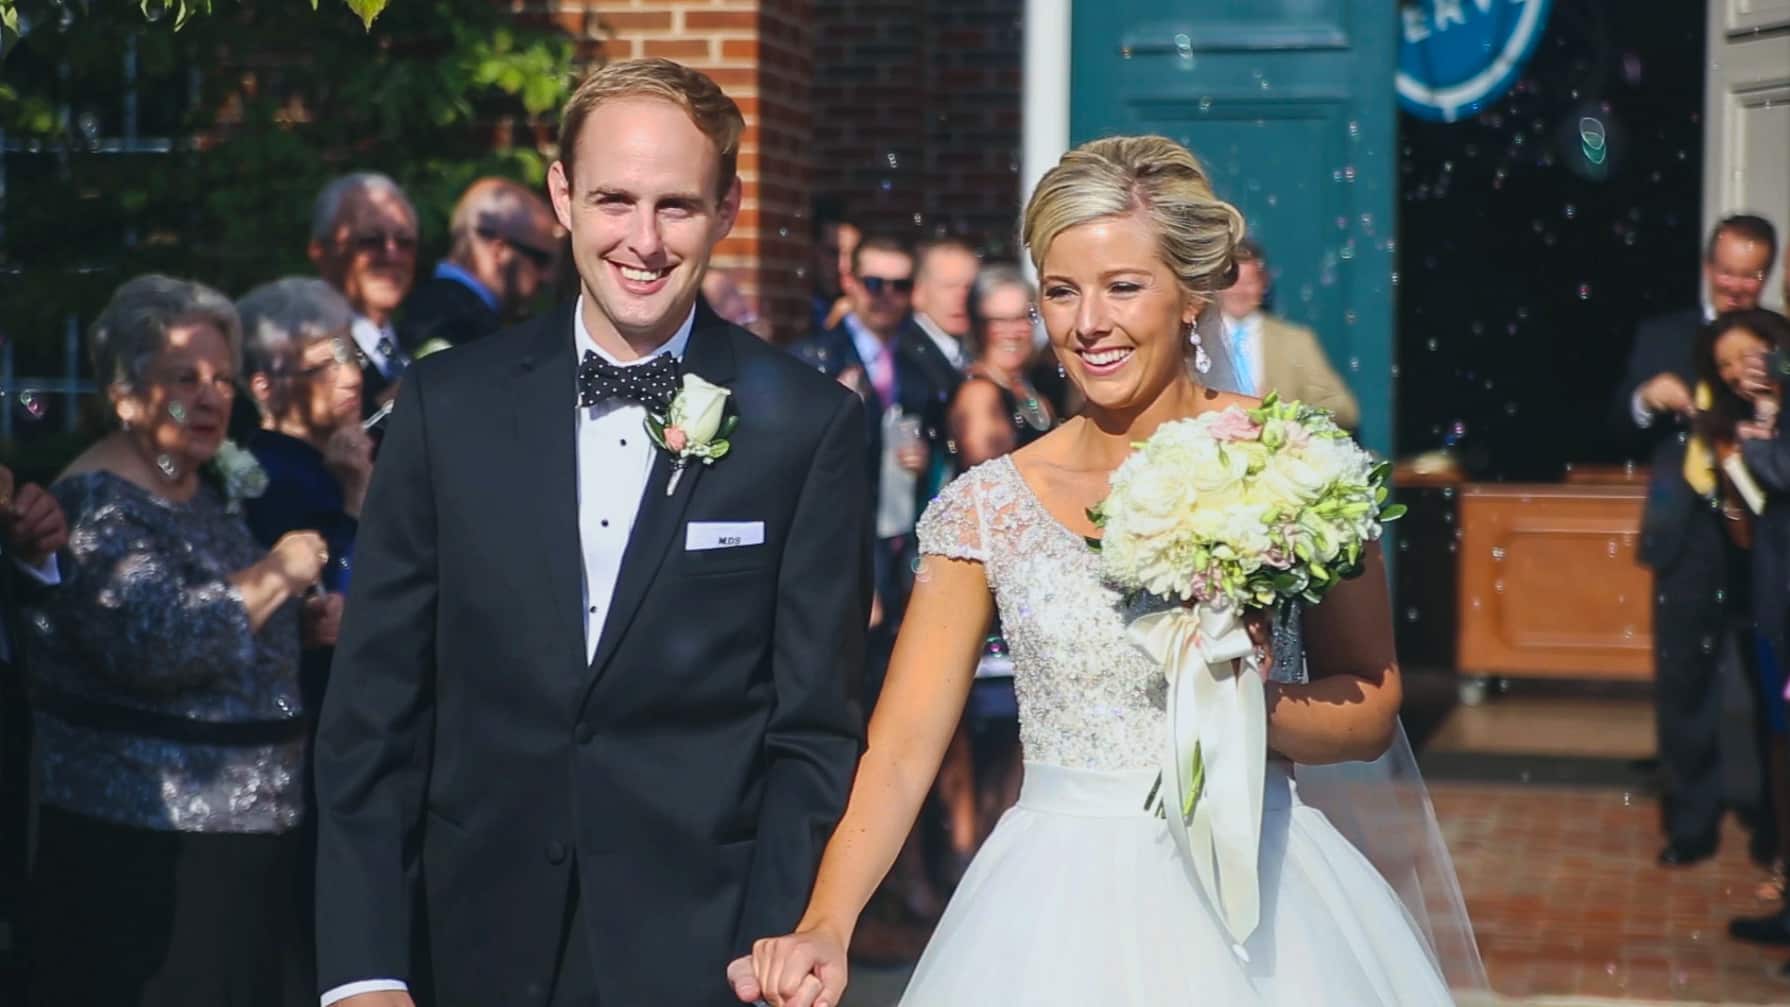 Max + Hillary: Wedding Video Highlights from Lexington, Kentucky